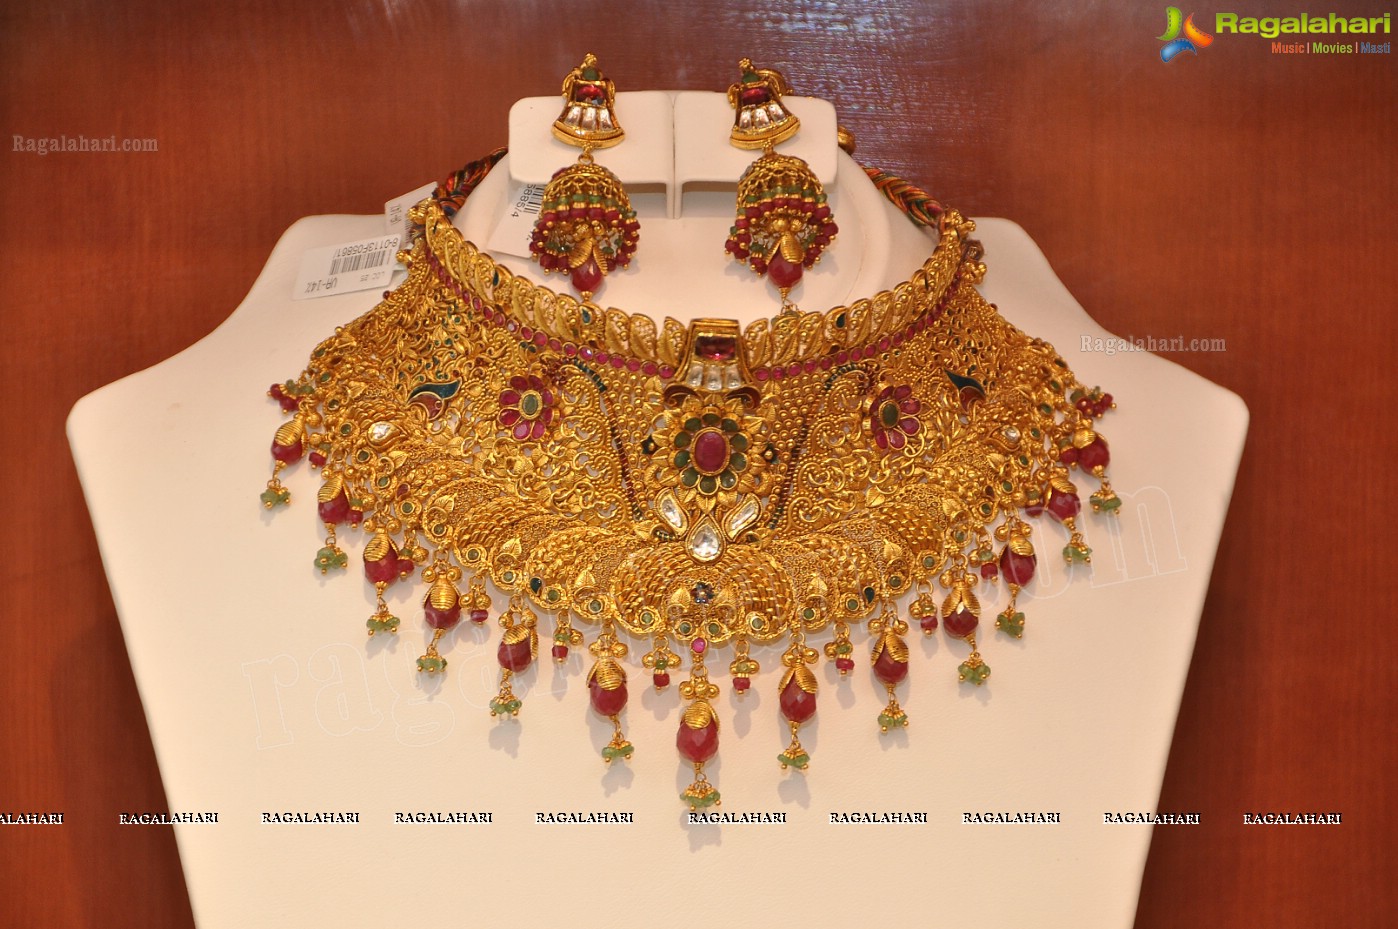 Khazana Jewellery Stores launch at AS Rao Nagar, Hyderabad